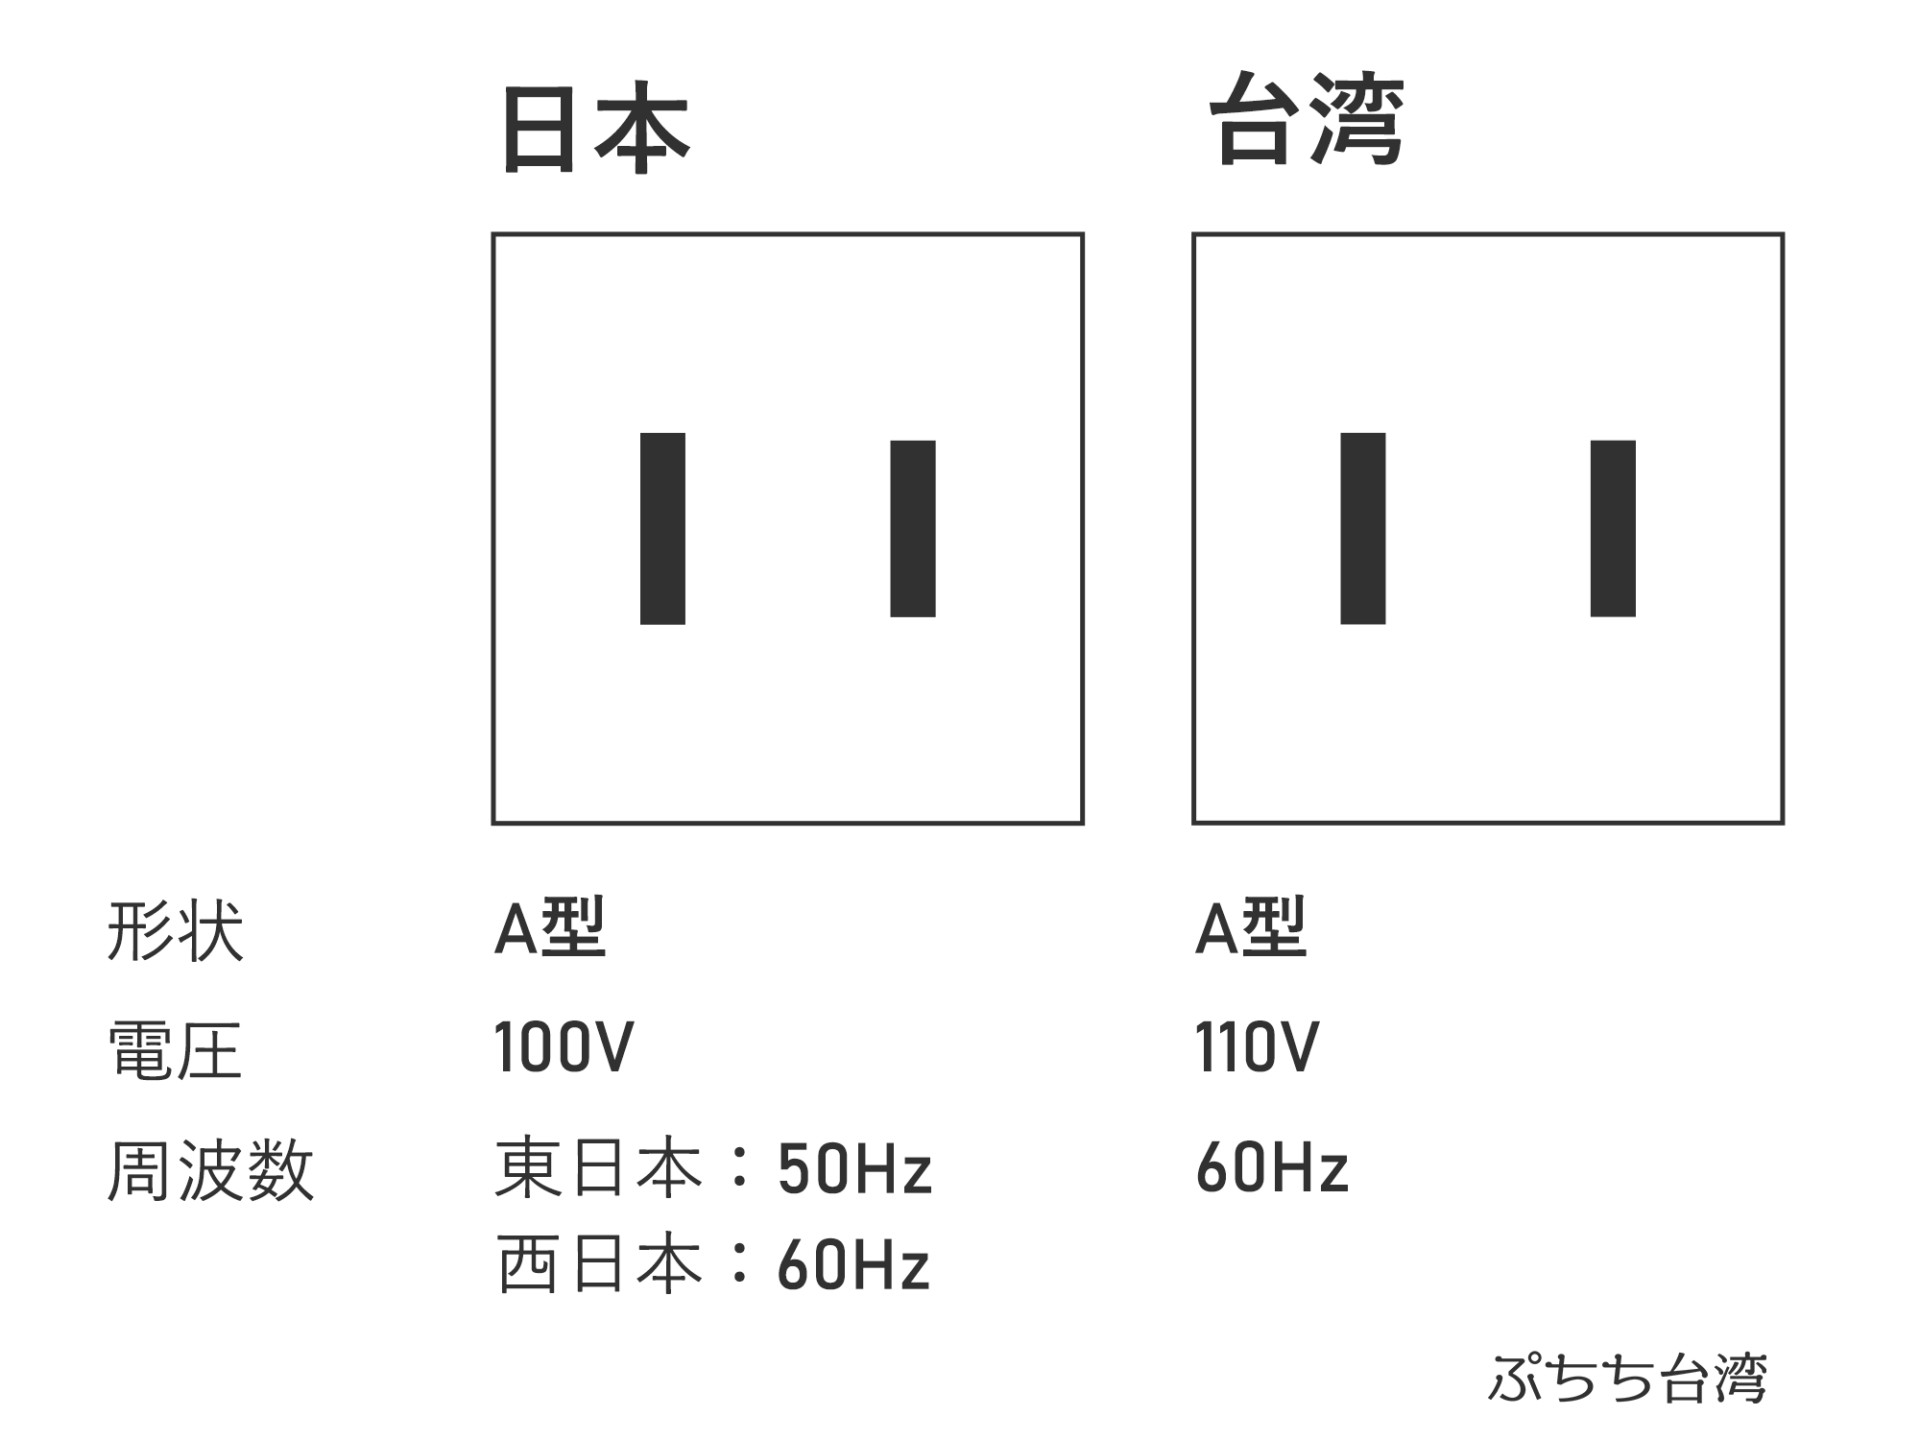 日本と台湾のコンセント・電源プラグの形状（タイプ）はどちらもA型。形状、電圧、周波数の早見表